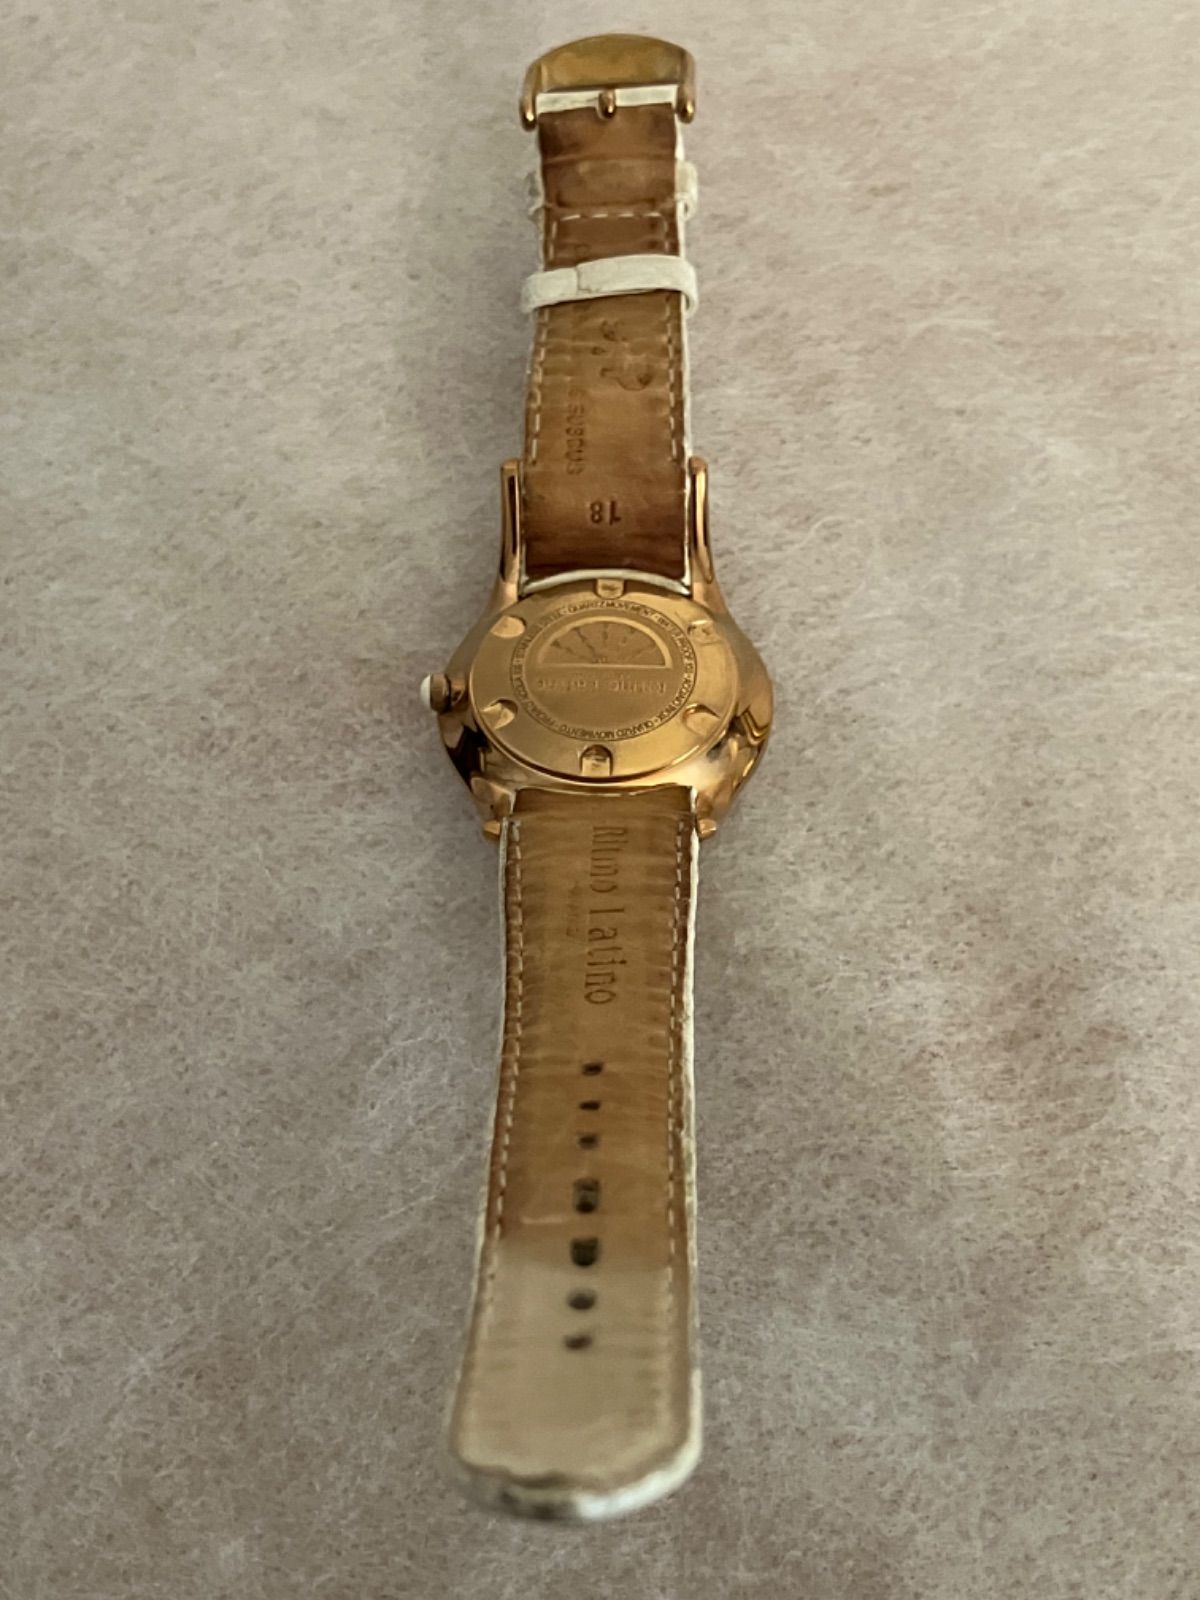 値下げ 稼働 Ritmo Latino 腕時計 リトモラティーノ ワニ革 ドーム型 レディース腕時計